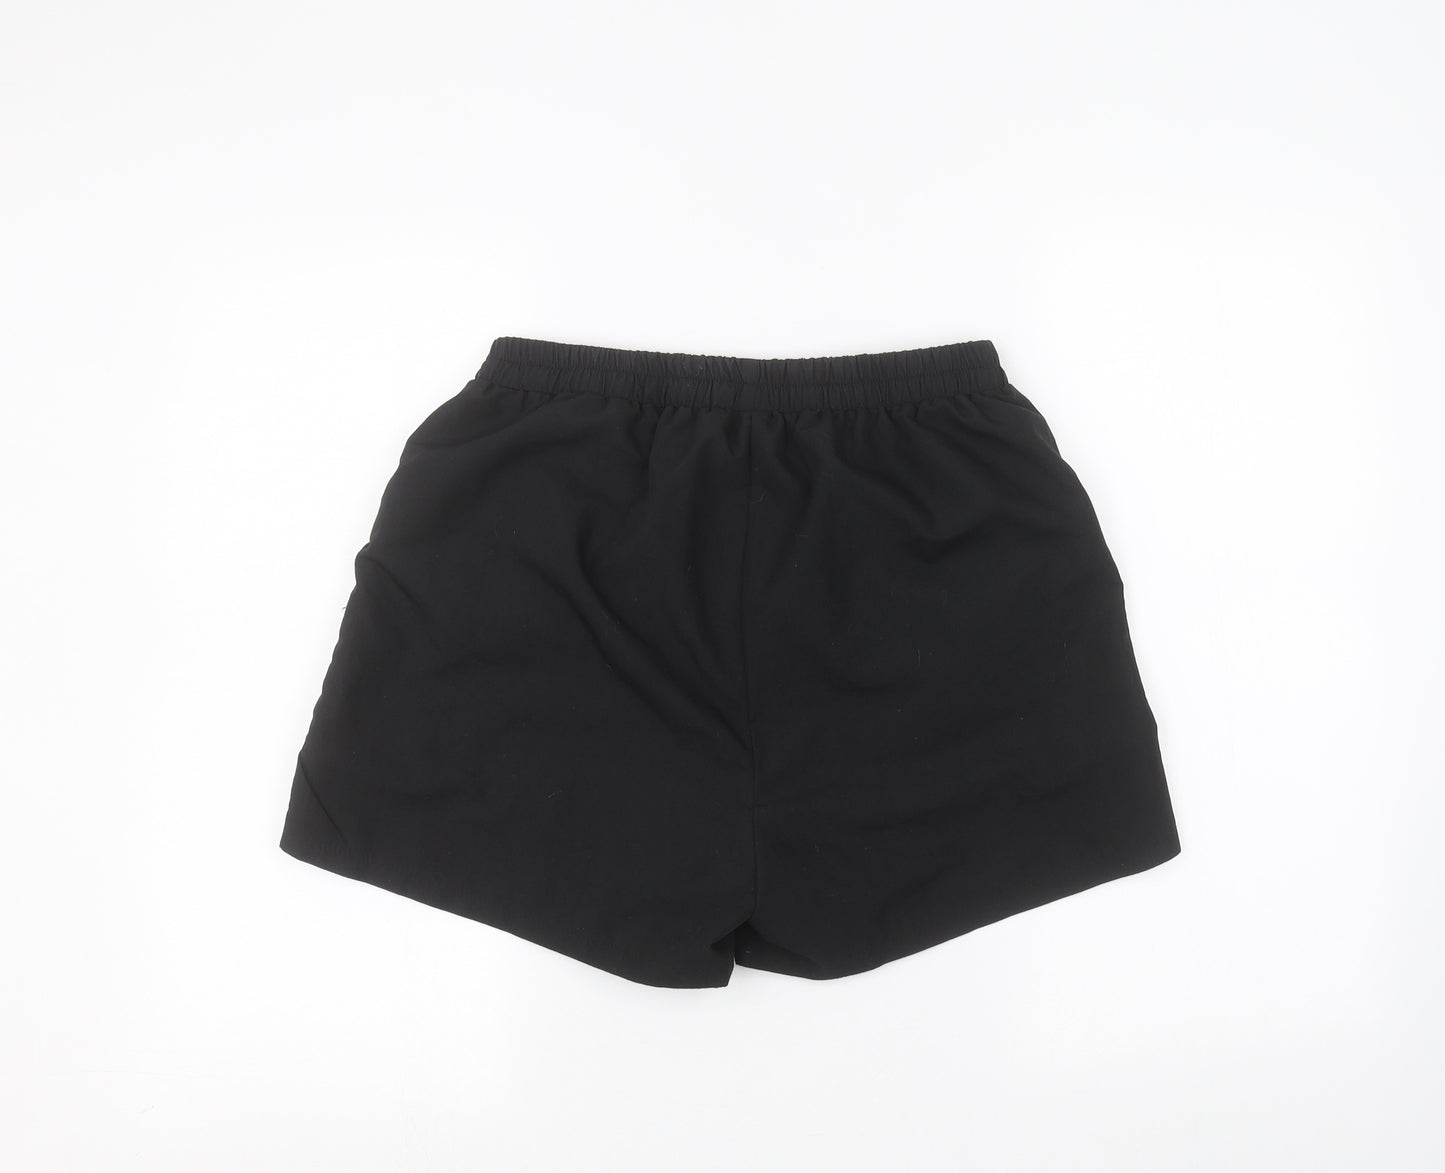 Preworn Mens Black   Sweat Shorts Size L